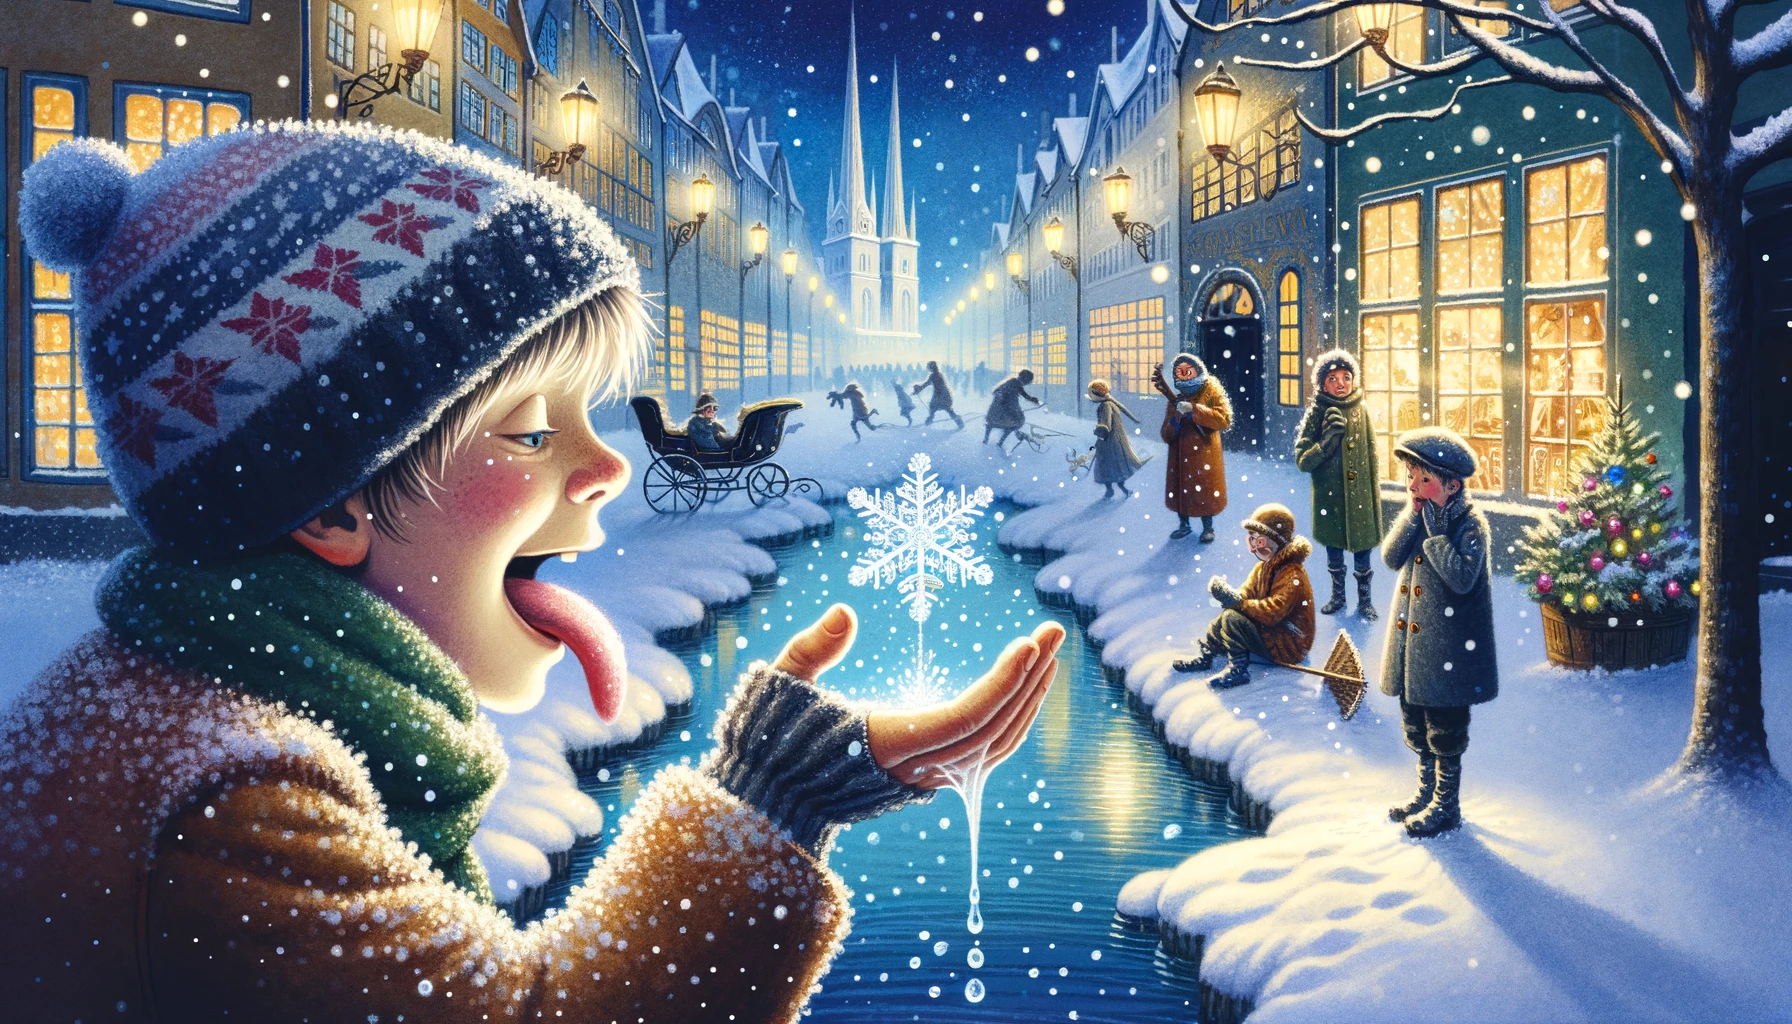 Das Bild fängt den berührenden Moment ein, in dem eine Schneeflocke auf der Zunge eines Kindes in Kopenhagen landet. Es zeigt eine zauberhafte, verschneite Stadtstraße, die mit der Wärme der Straßenlaternen und der Freude spielender Kinder beleuchtet wird, und vermittelt ein Gefühl der Erfüllung und des friedvollen Endes.